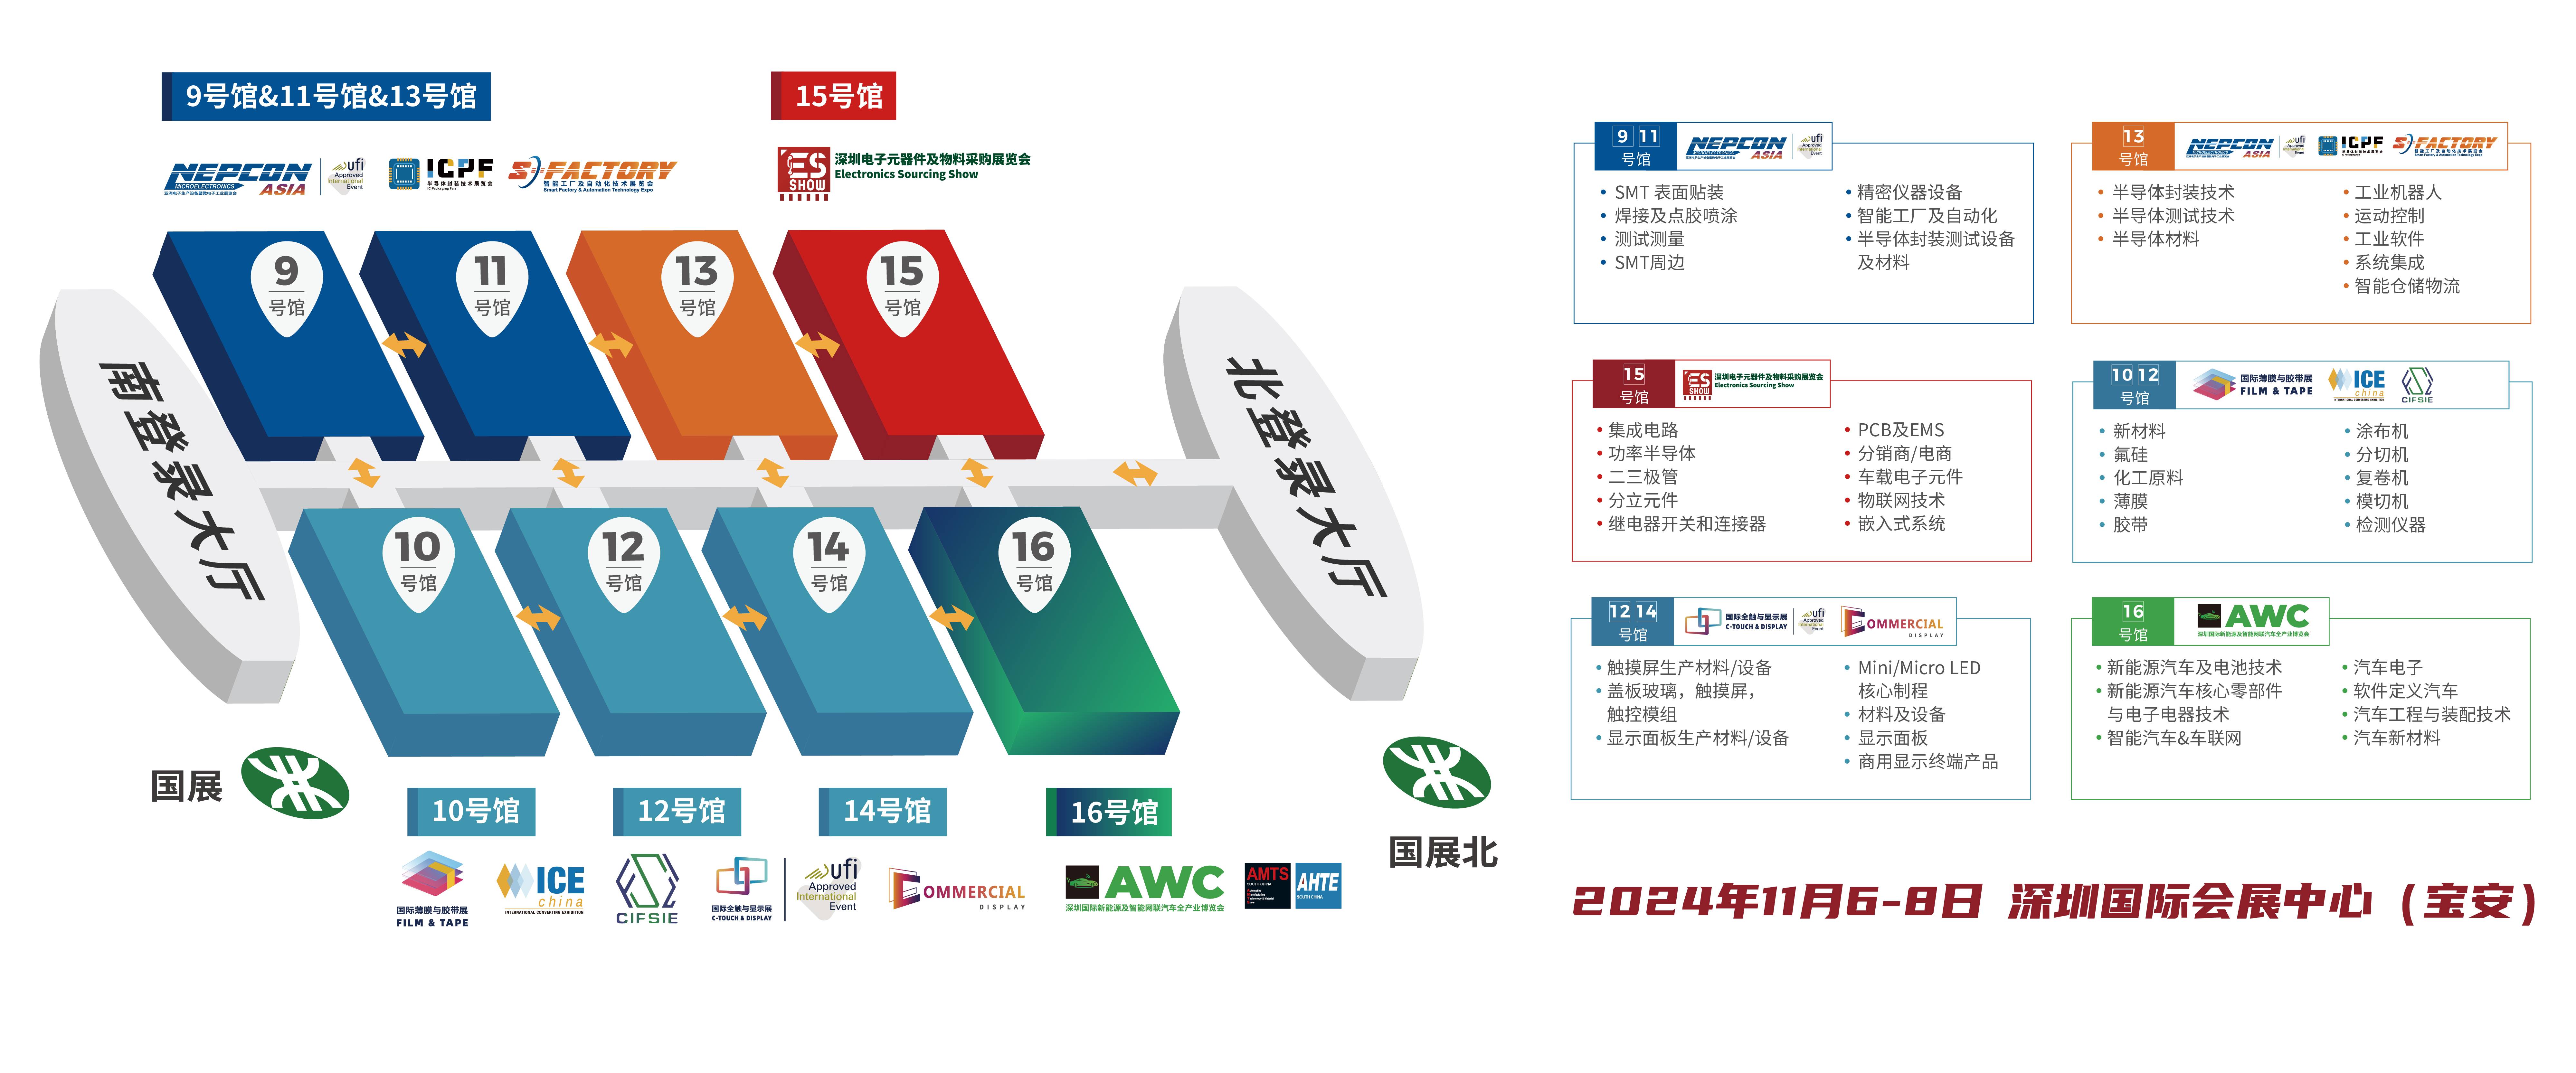 深圳电子展 华南电子展 RISC-V 芯片 国产芯片